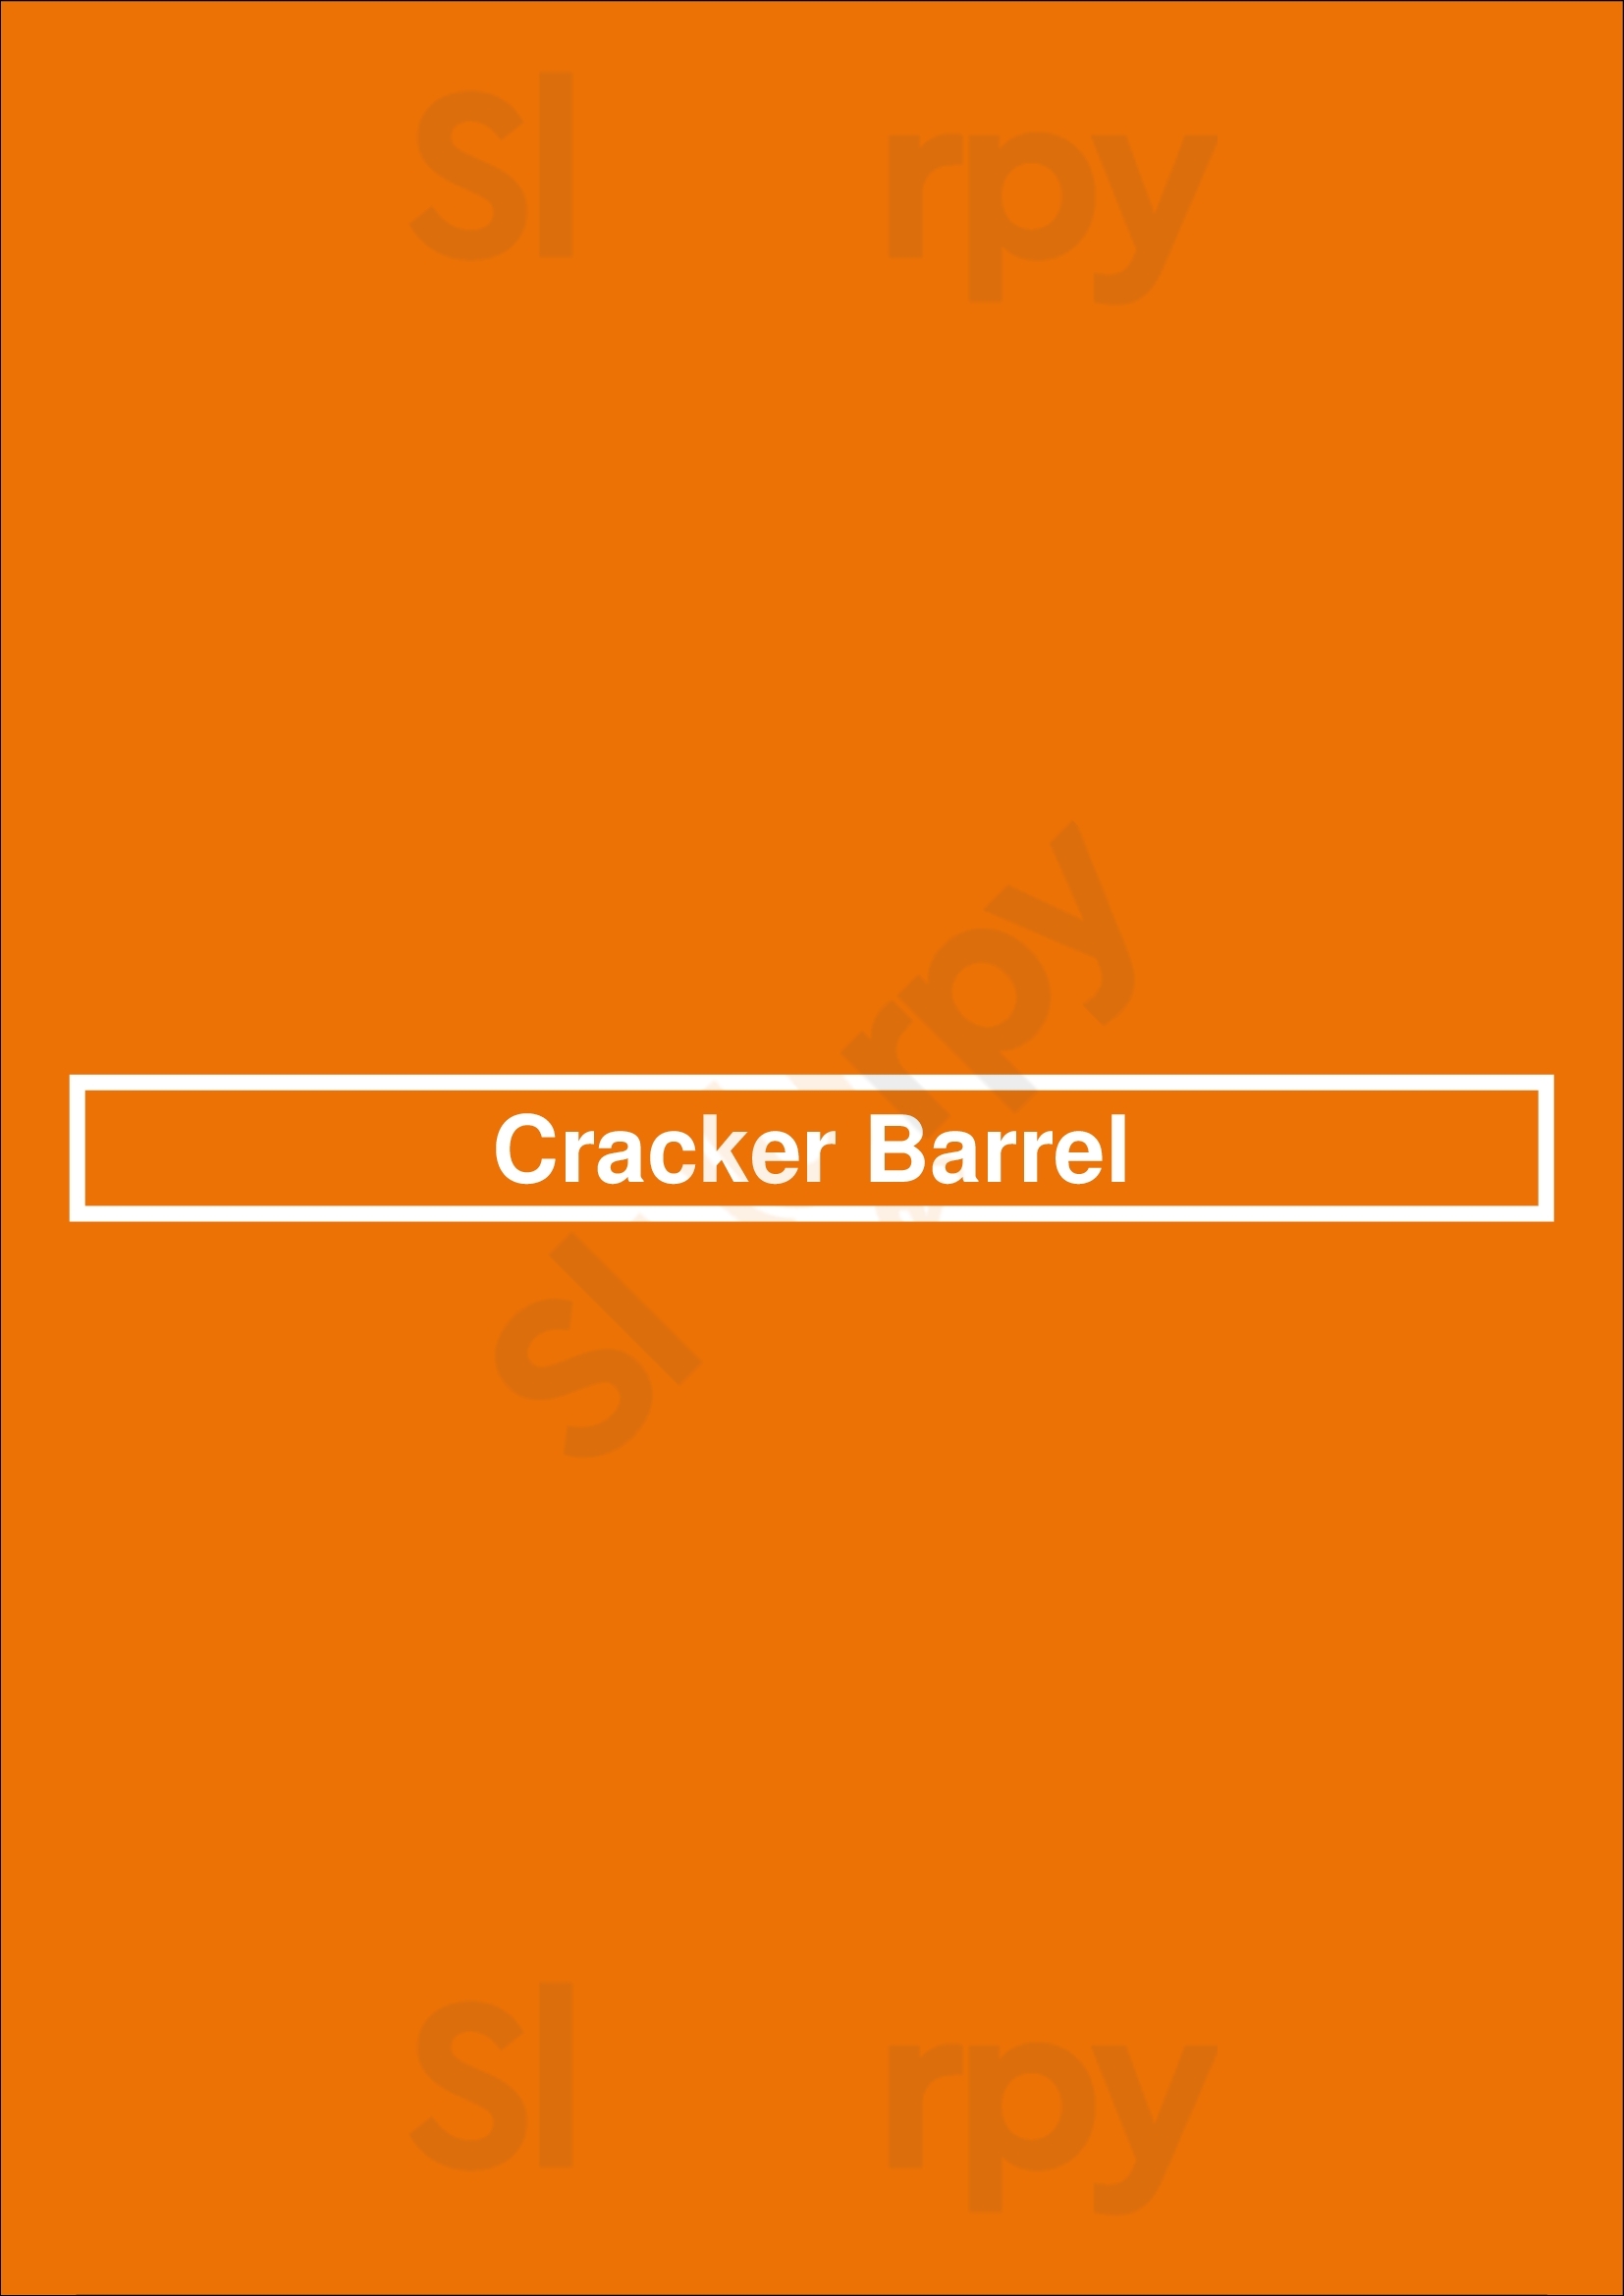 Cracker Barrel Colorado Springs Menu - 1